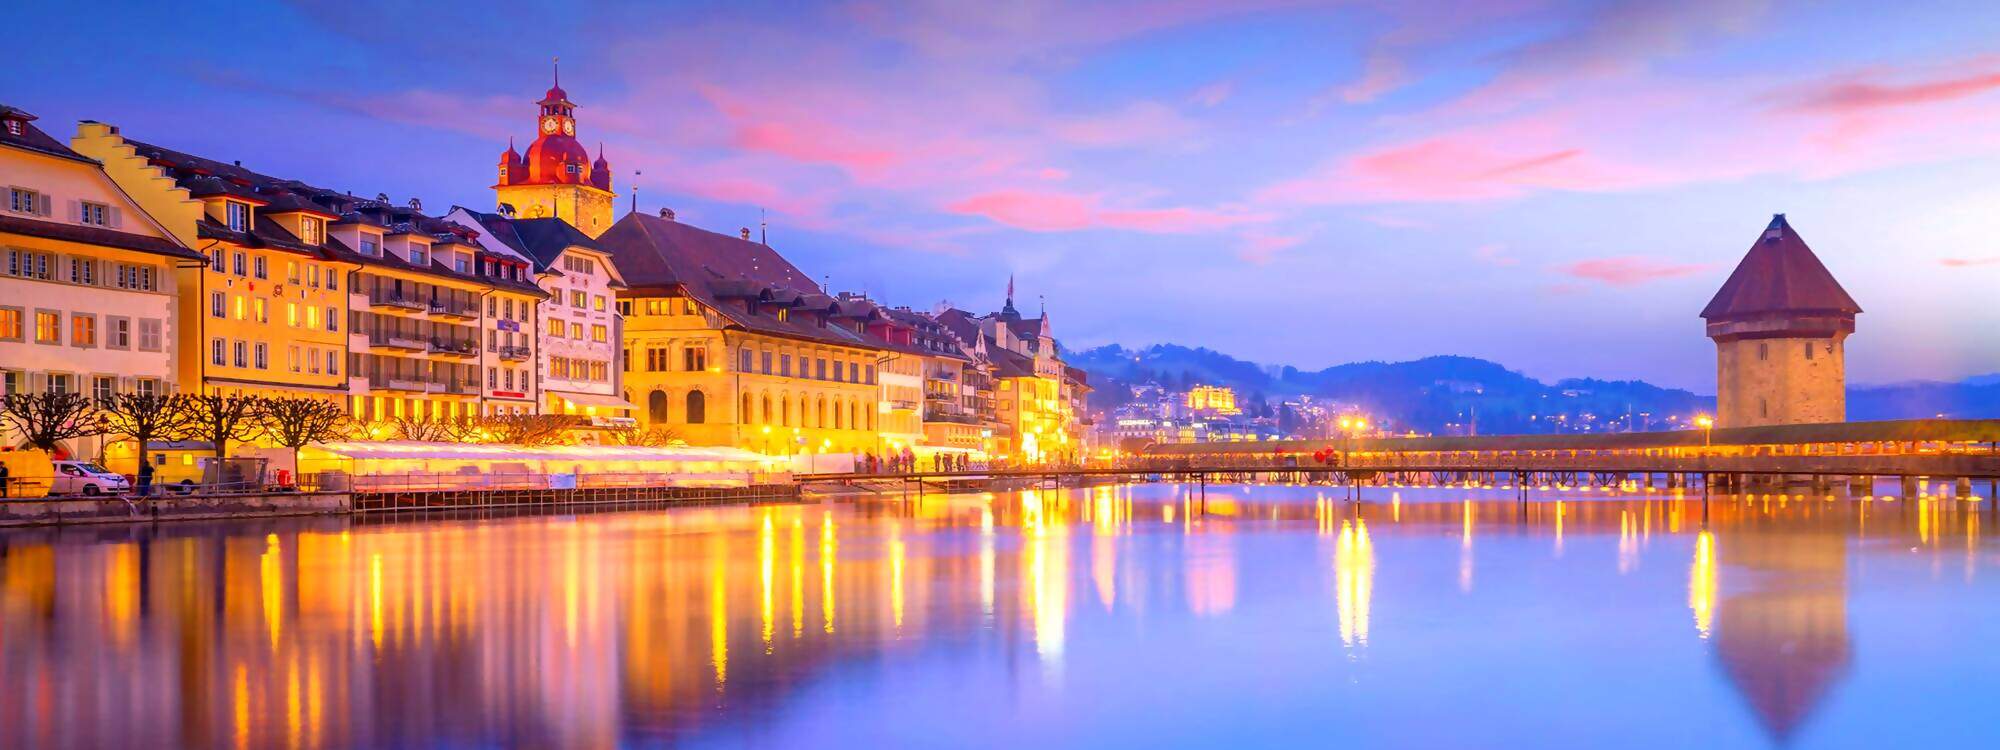 Historisches Stadtzentrum der Innenstadt von Luzern mit Kapellbruecke und Vierwaldstaettersee in der Schweiz